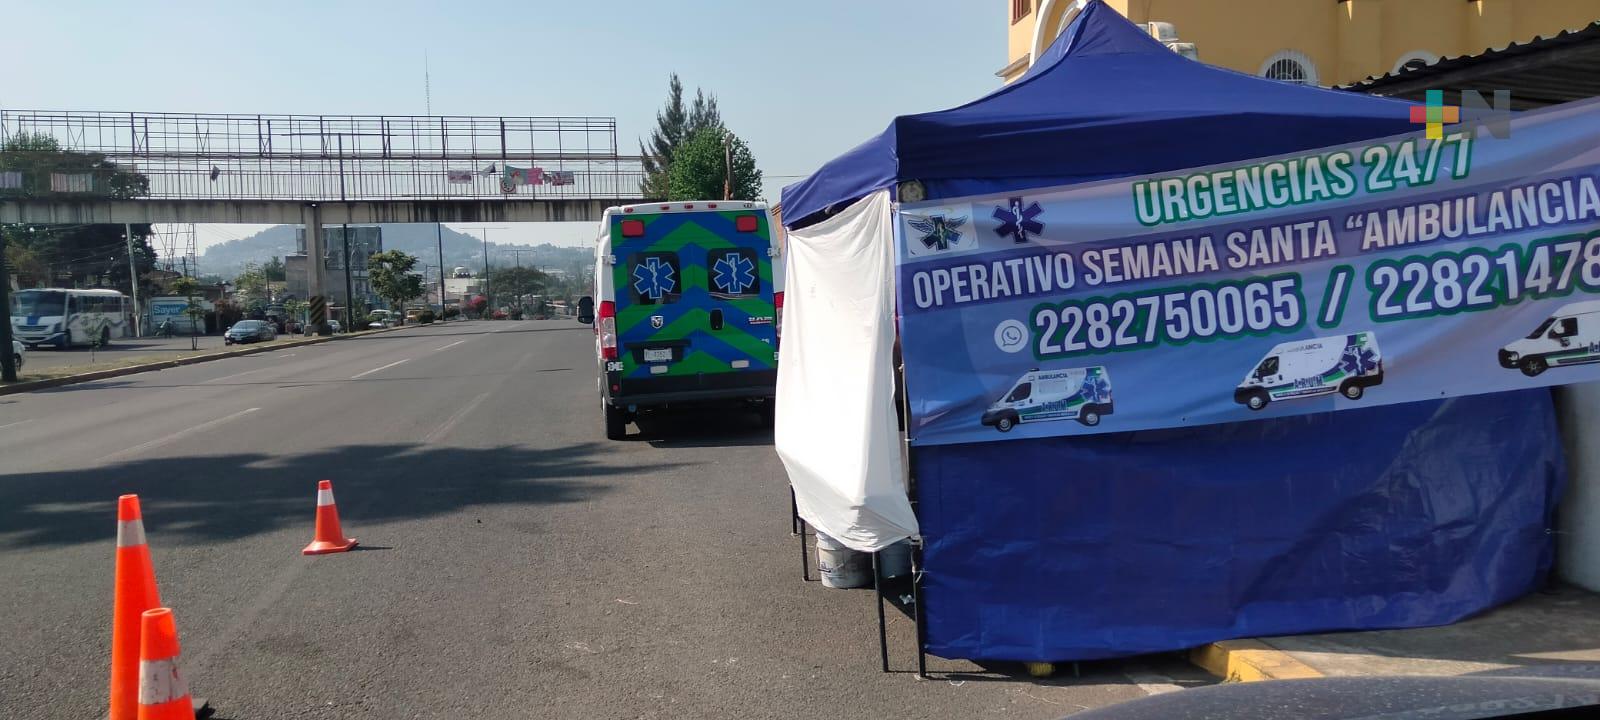 Módulos y ambulancias del operativo de prevención en Xalapa para auxiliar a paseantes